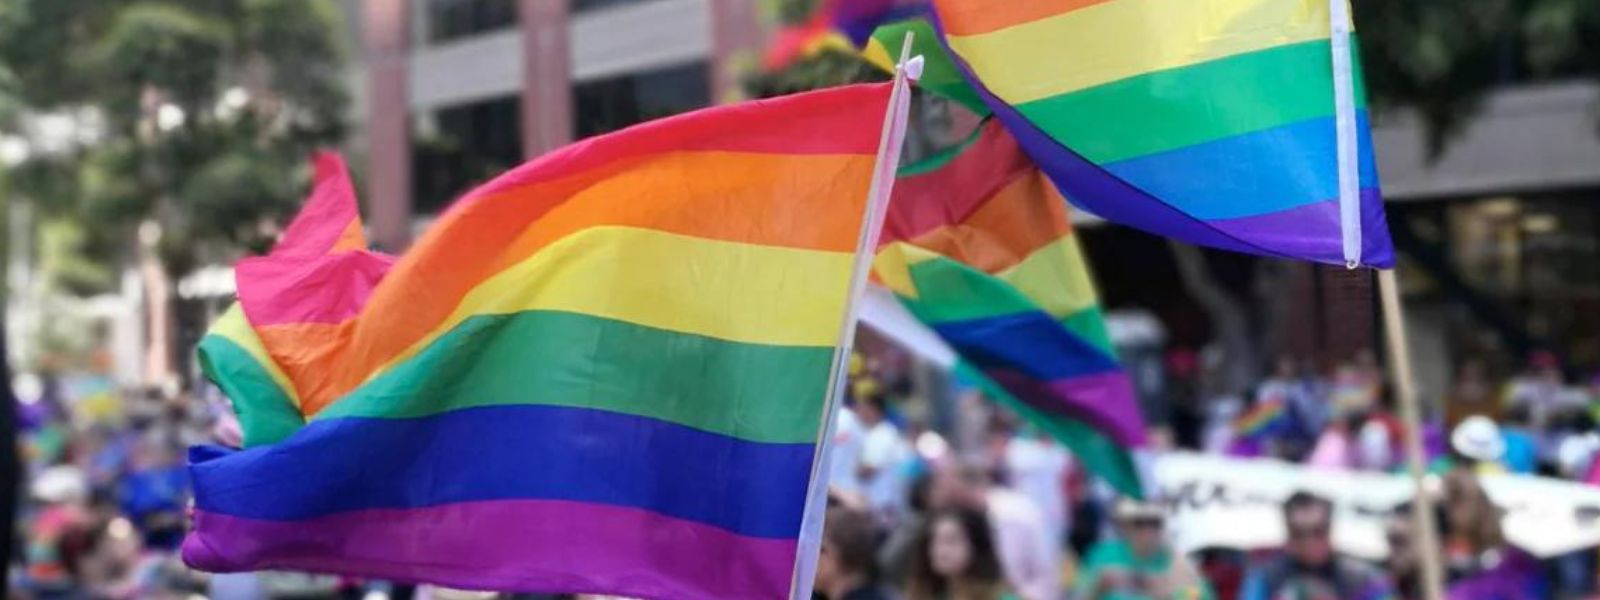 Ugandan parliament passes anti-gay bill